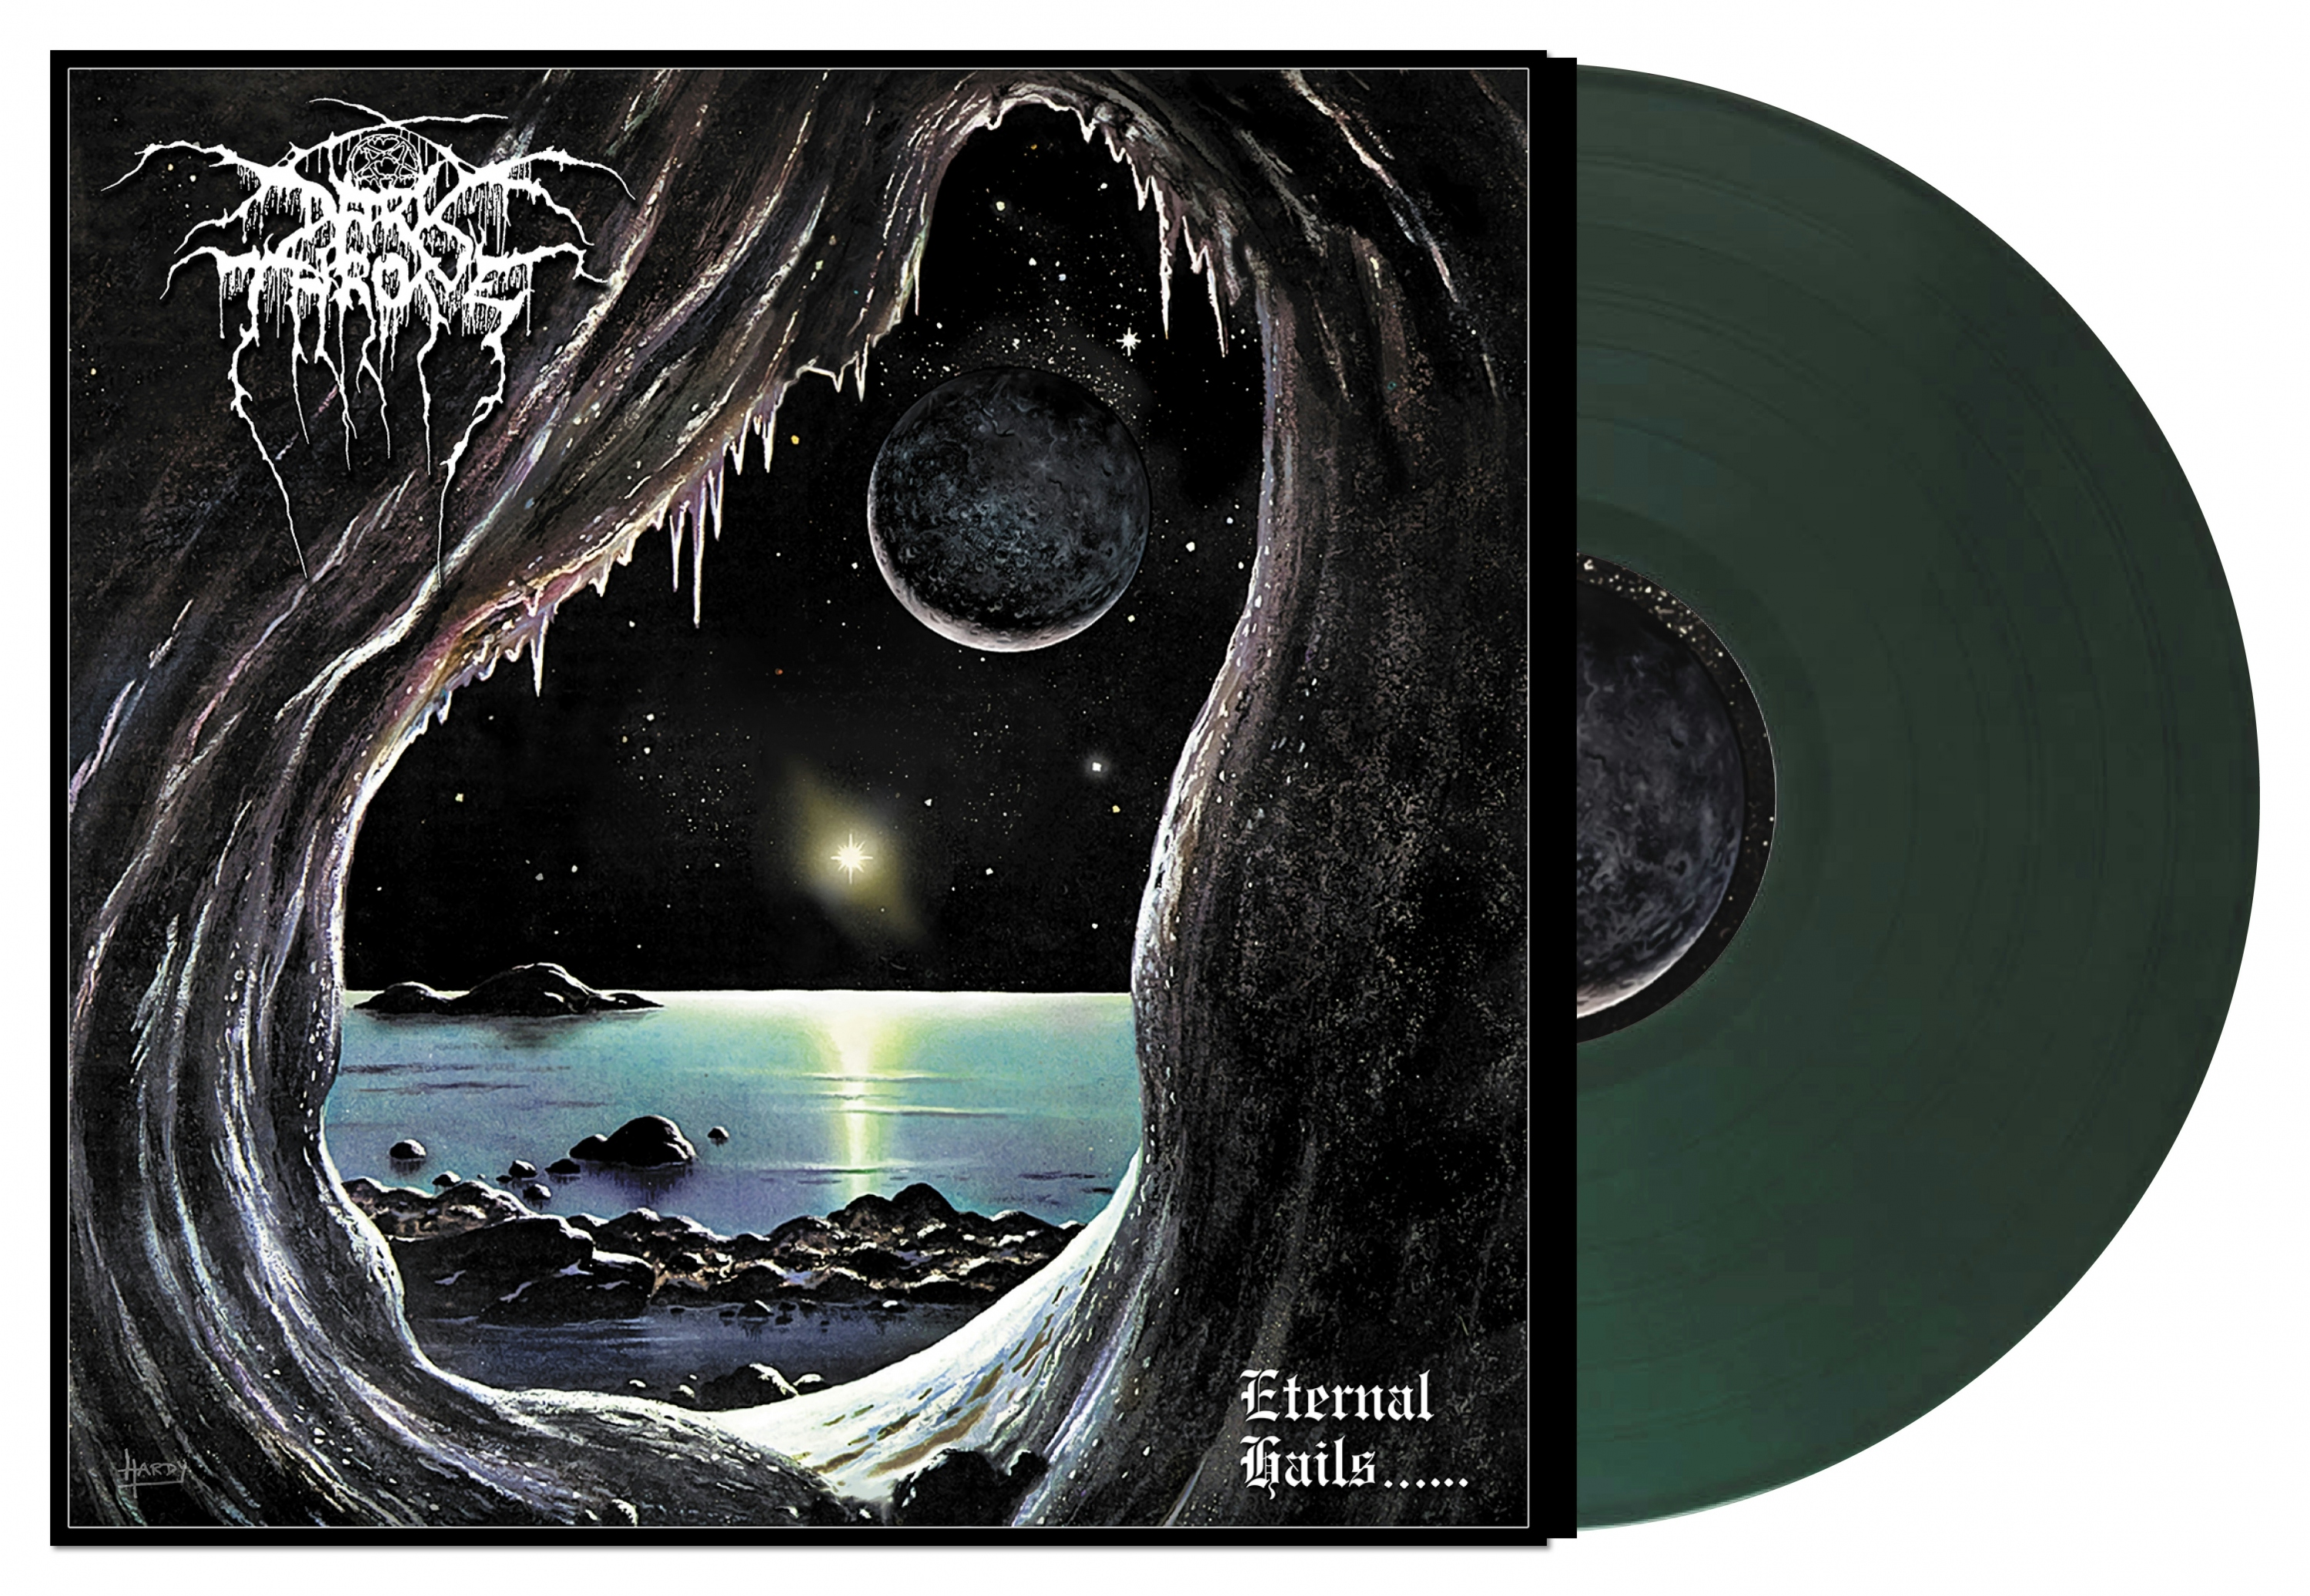 Album artwork for Eternal Hails by Darkthrone